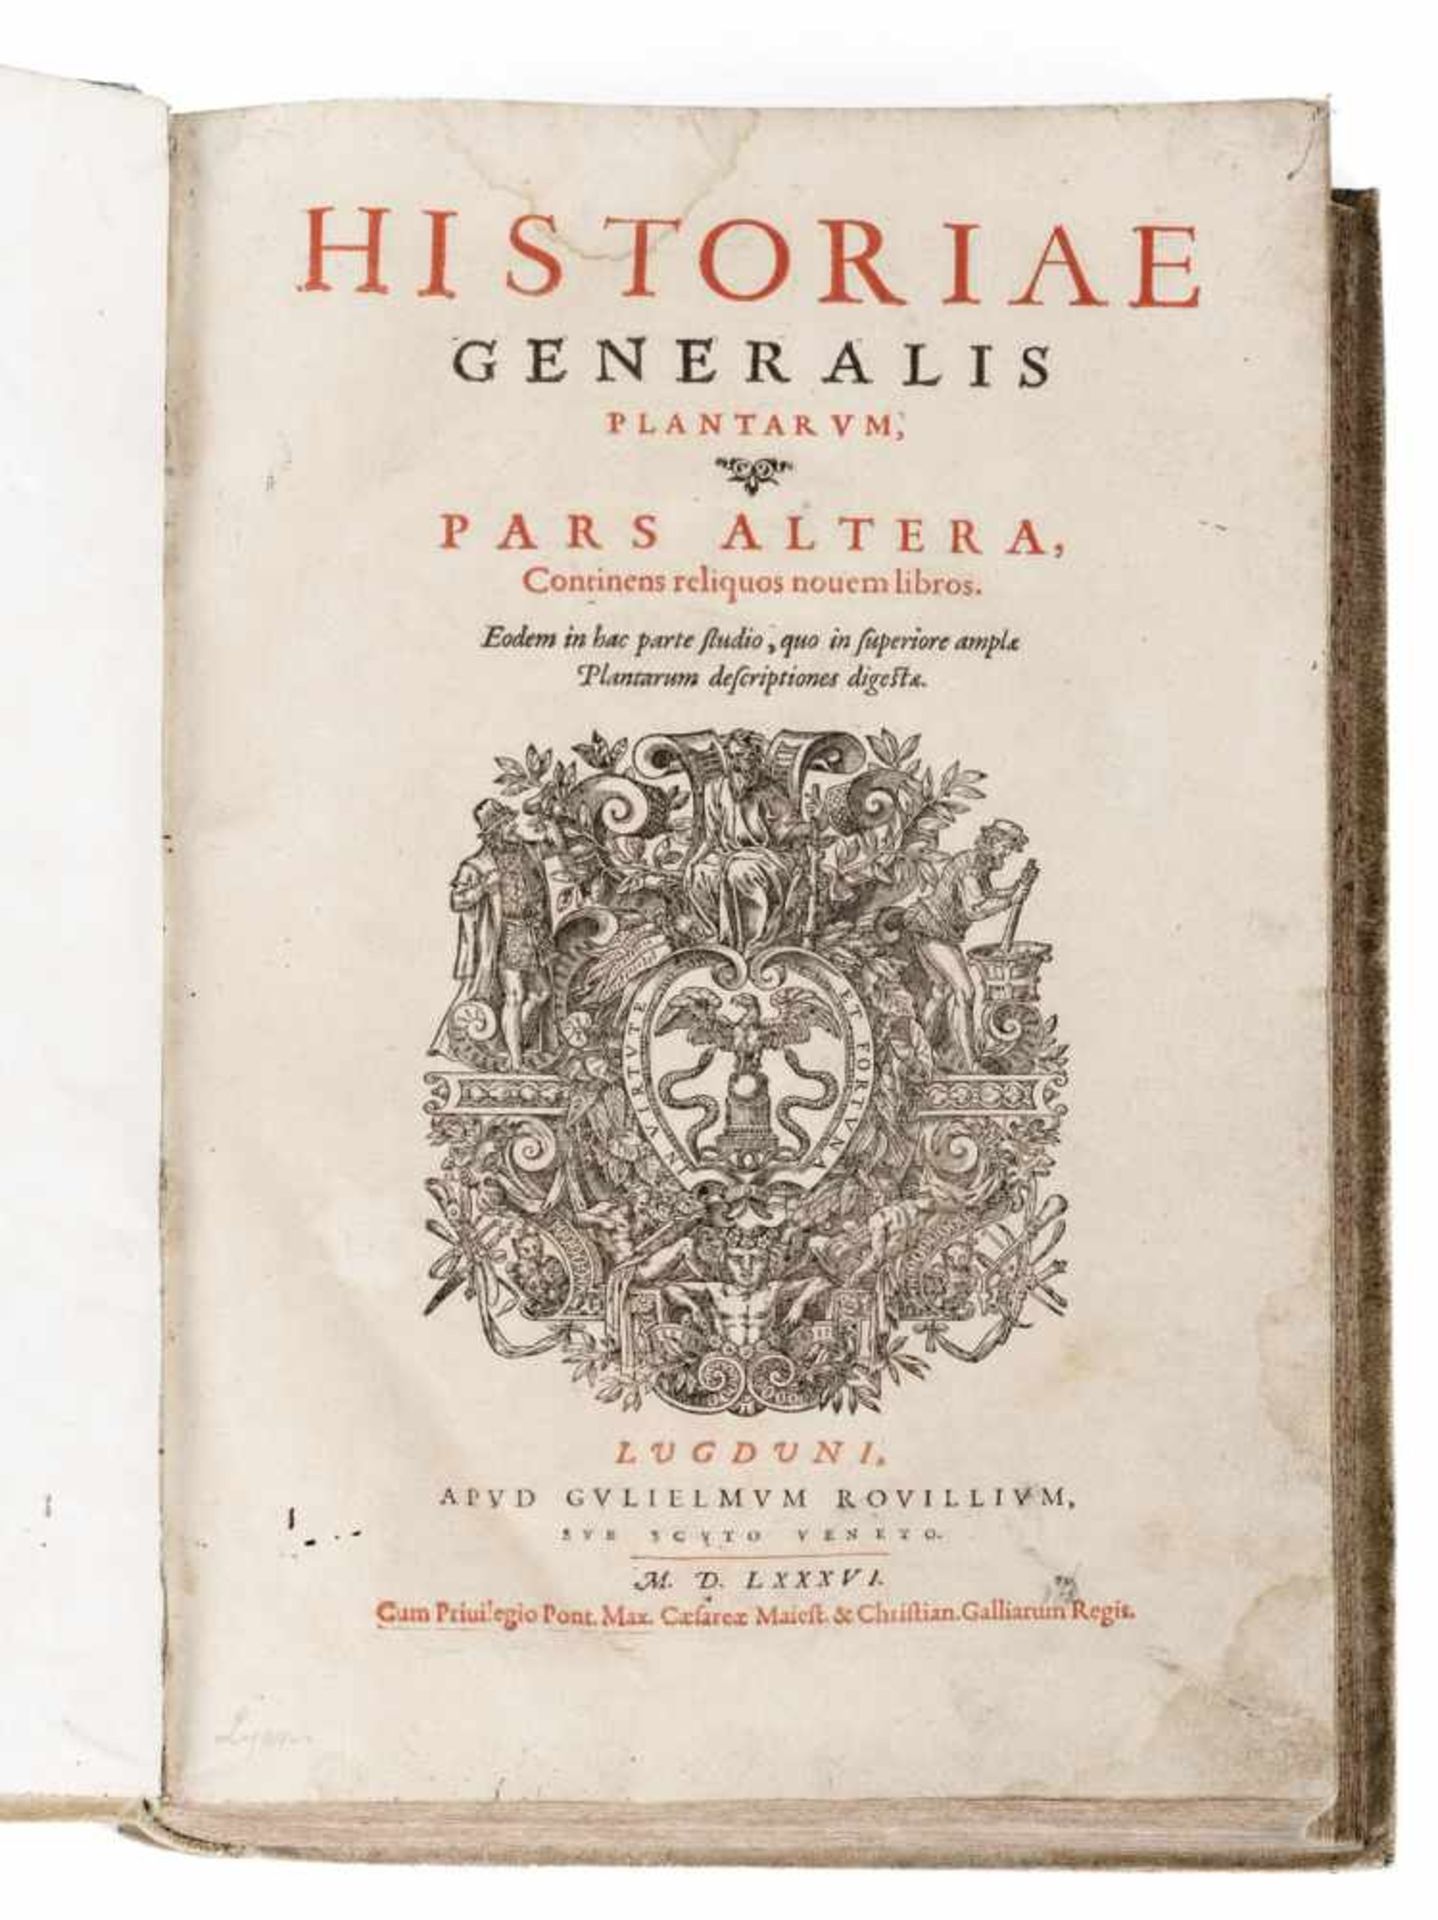 HISTORIAE GENERALIS PLANTARUM,PARS ALTERA, LYON 1586